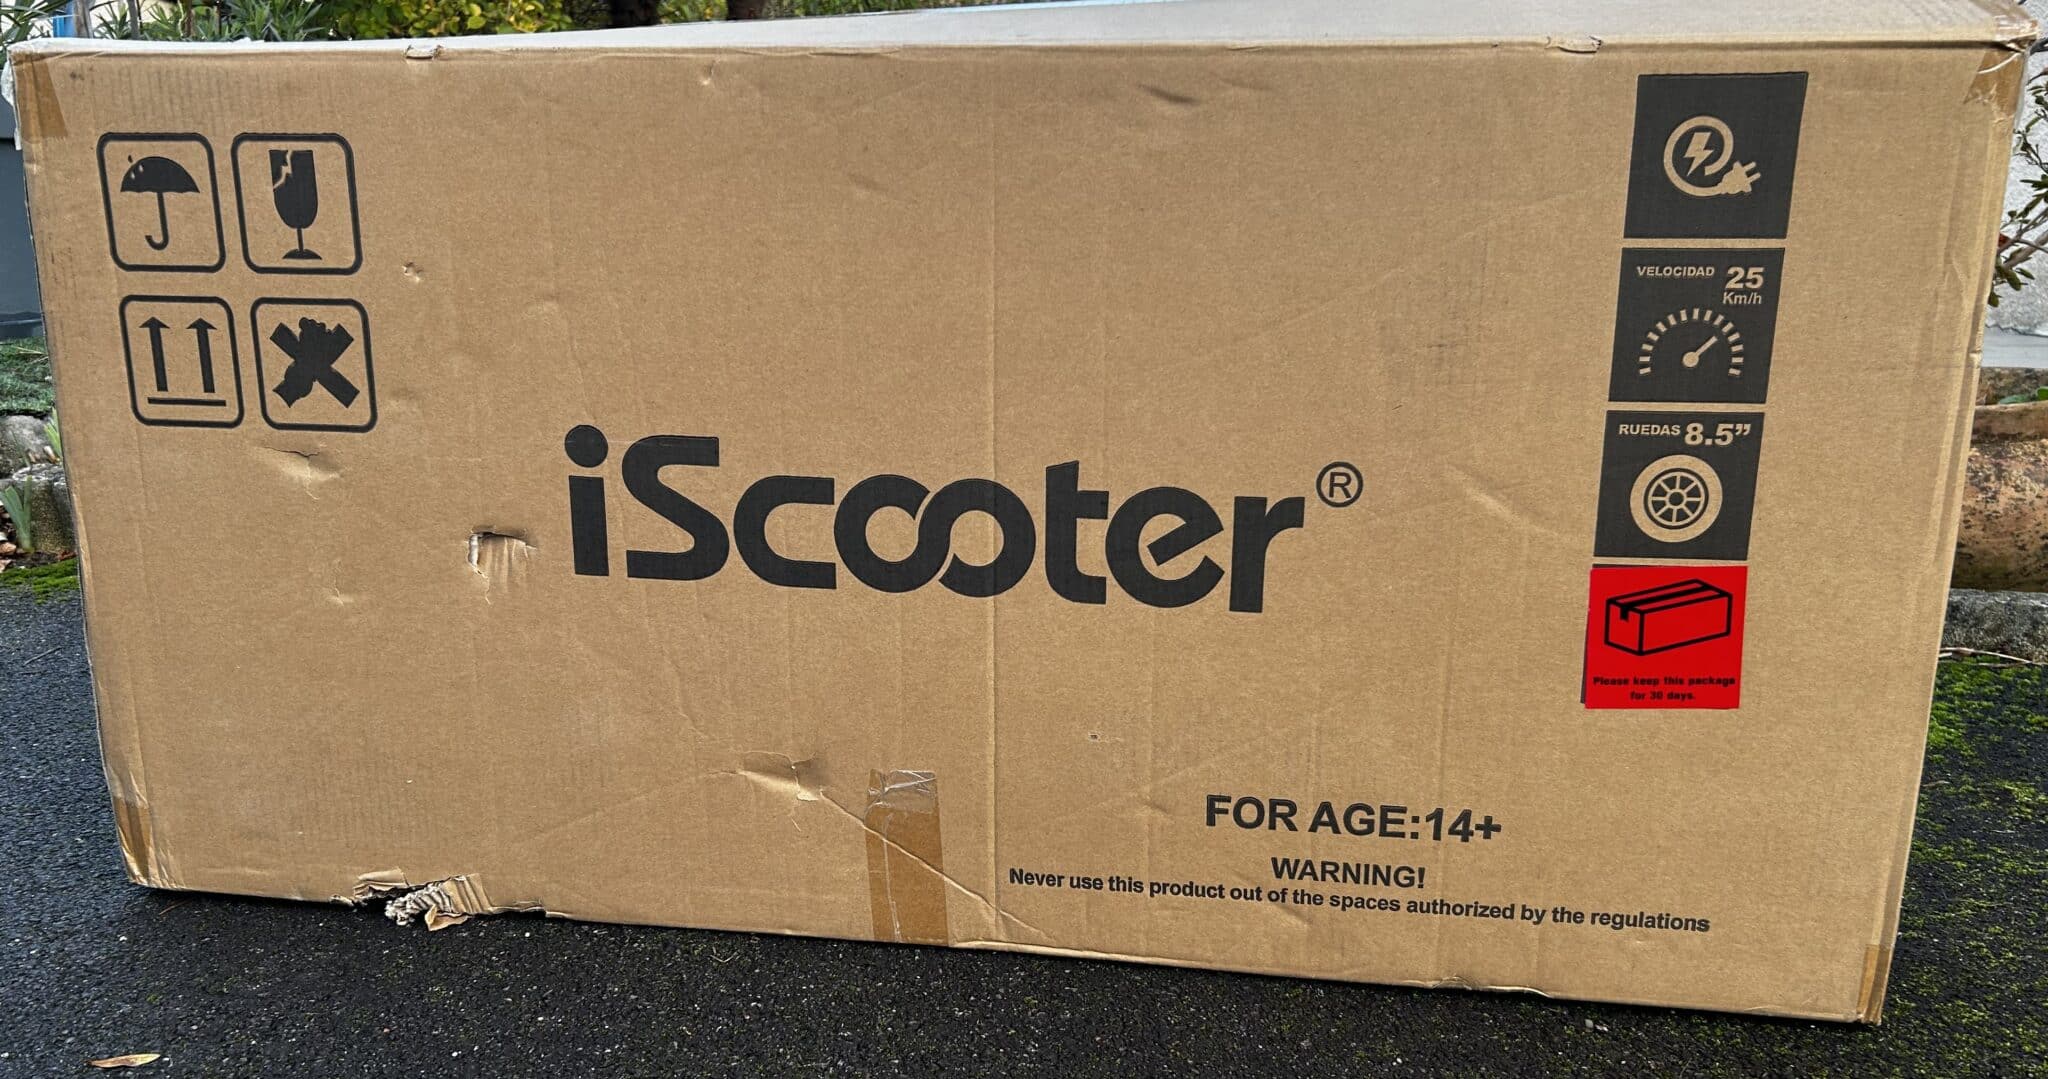 Le carton de la trottinette électrique iScooter i9